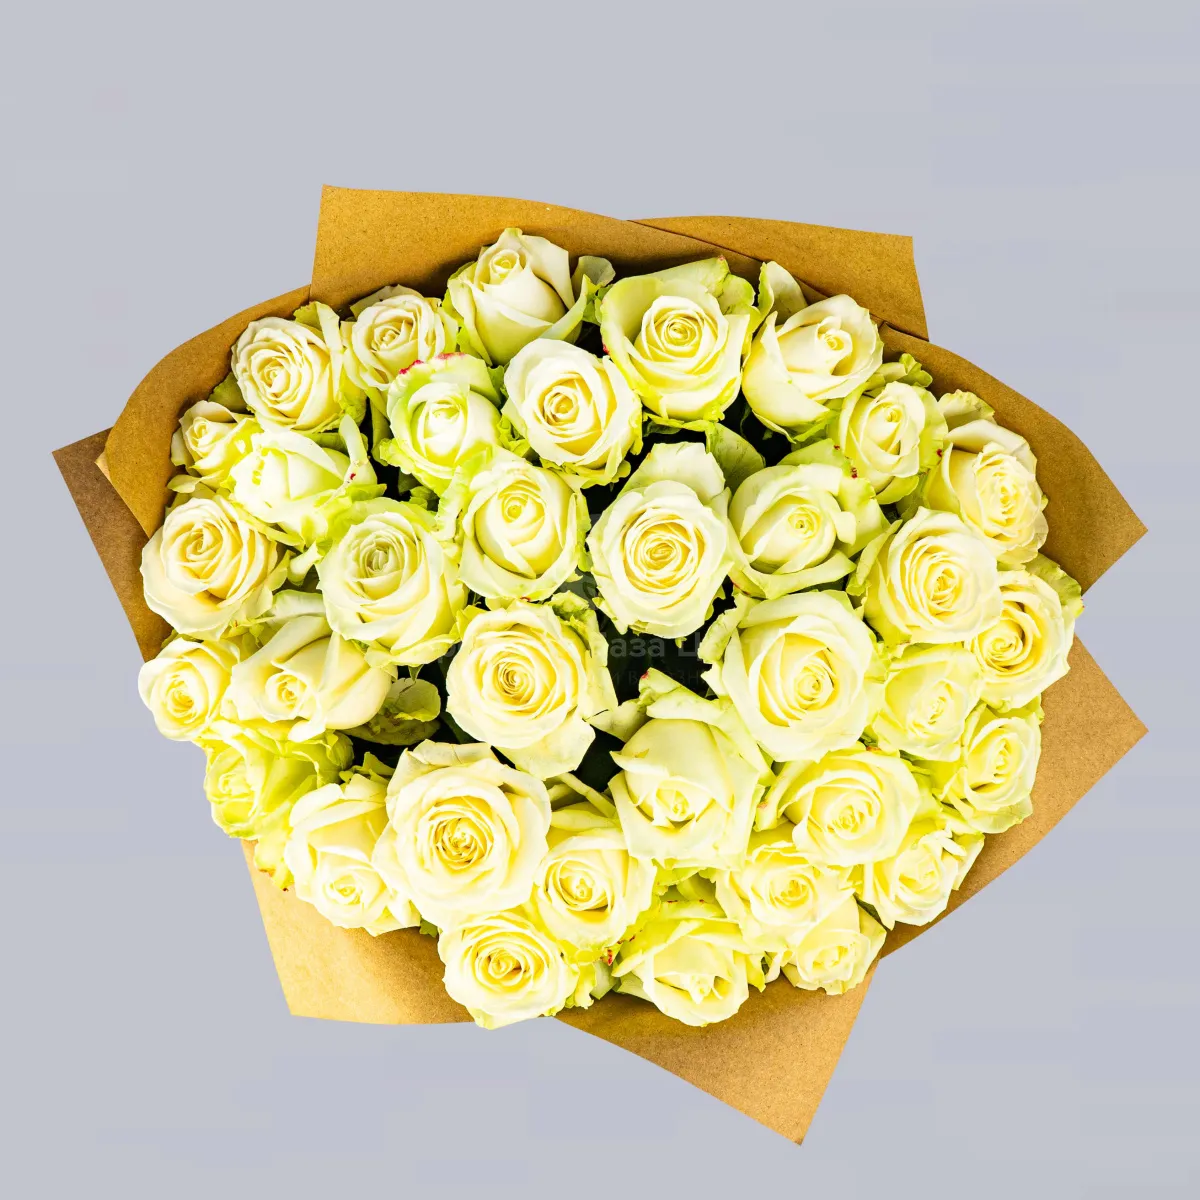 25 бело-зеленых роз (60 см)